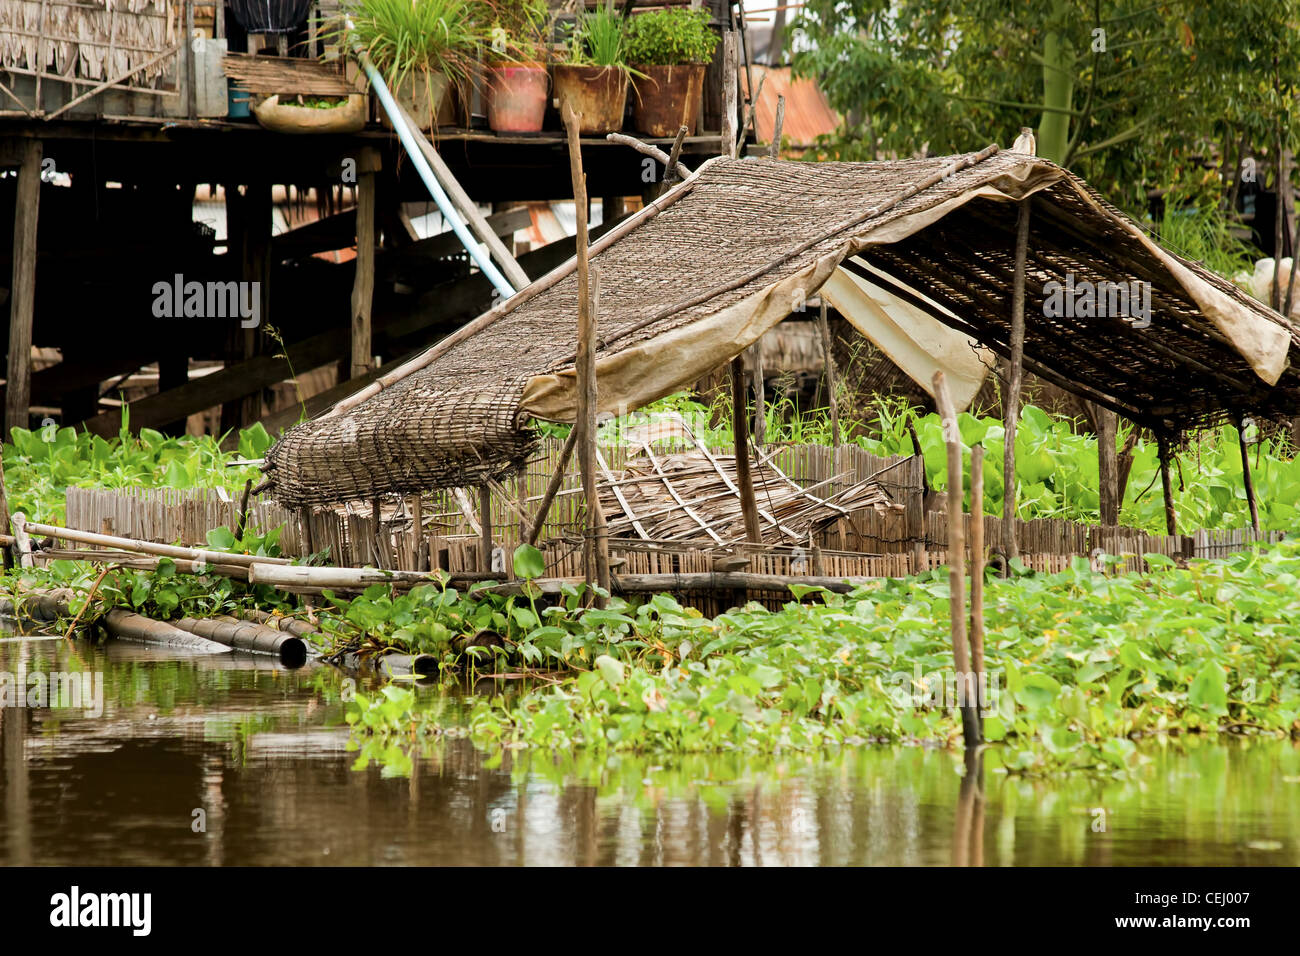 La structure du toit de paille sur le lac Tonle Sap au Cambodge, Kompong Khleang village. Banque D'Images